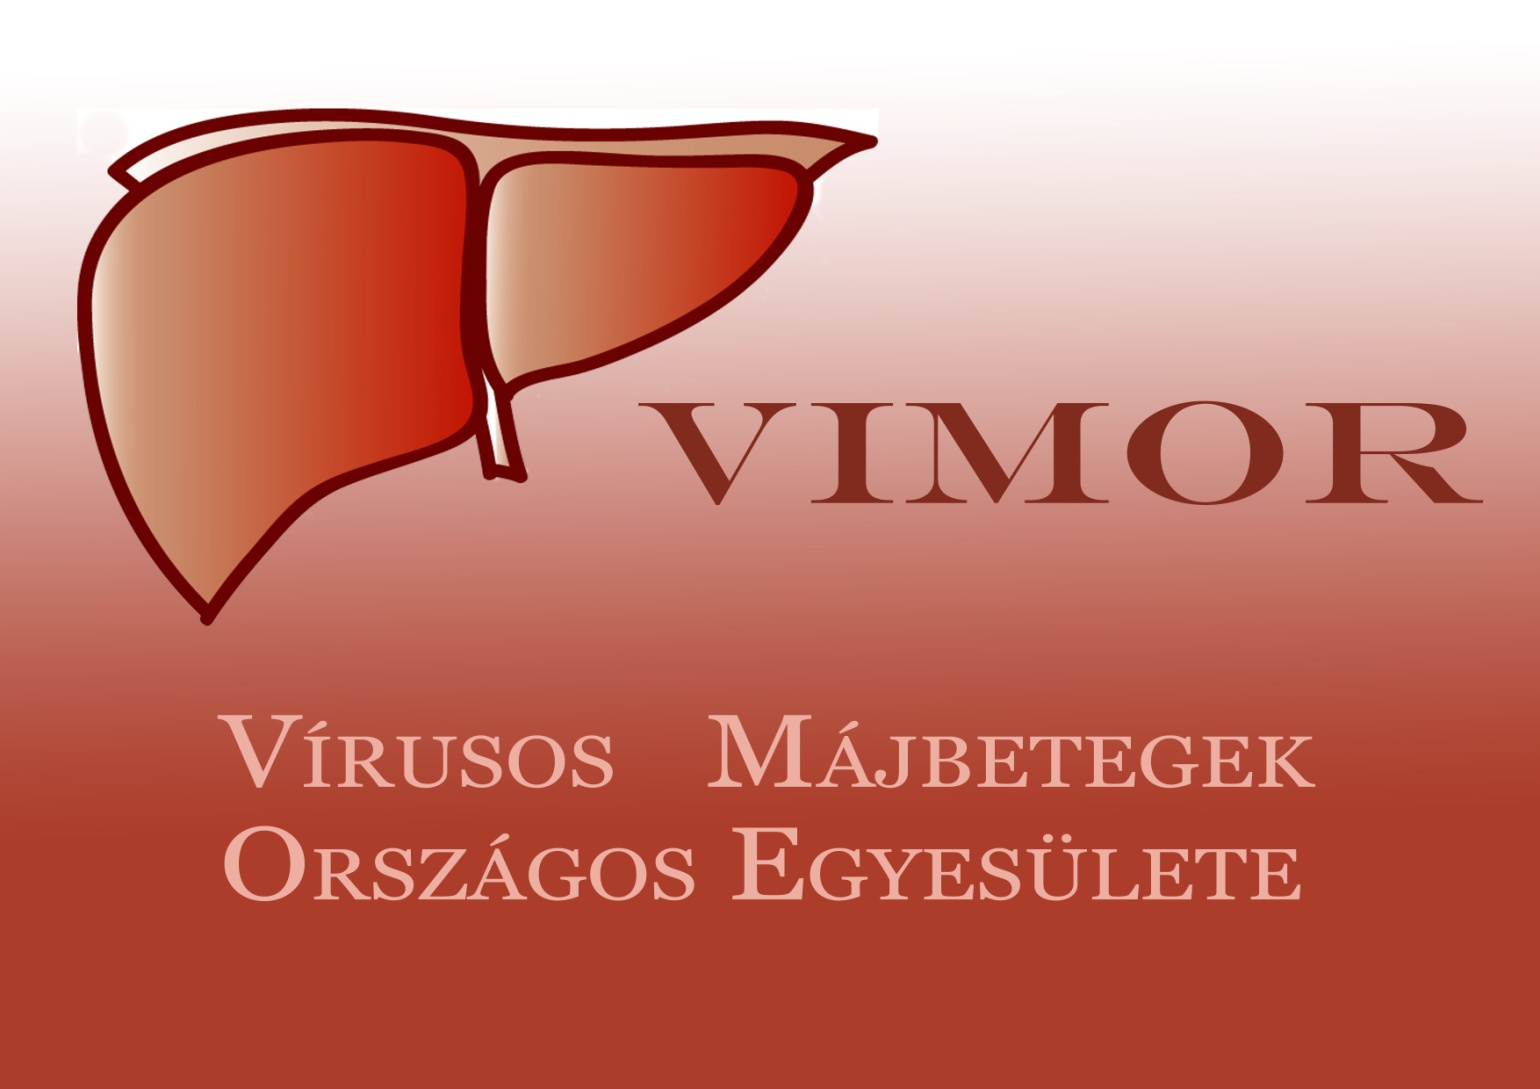 www.vimor.